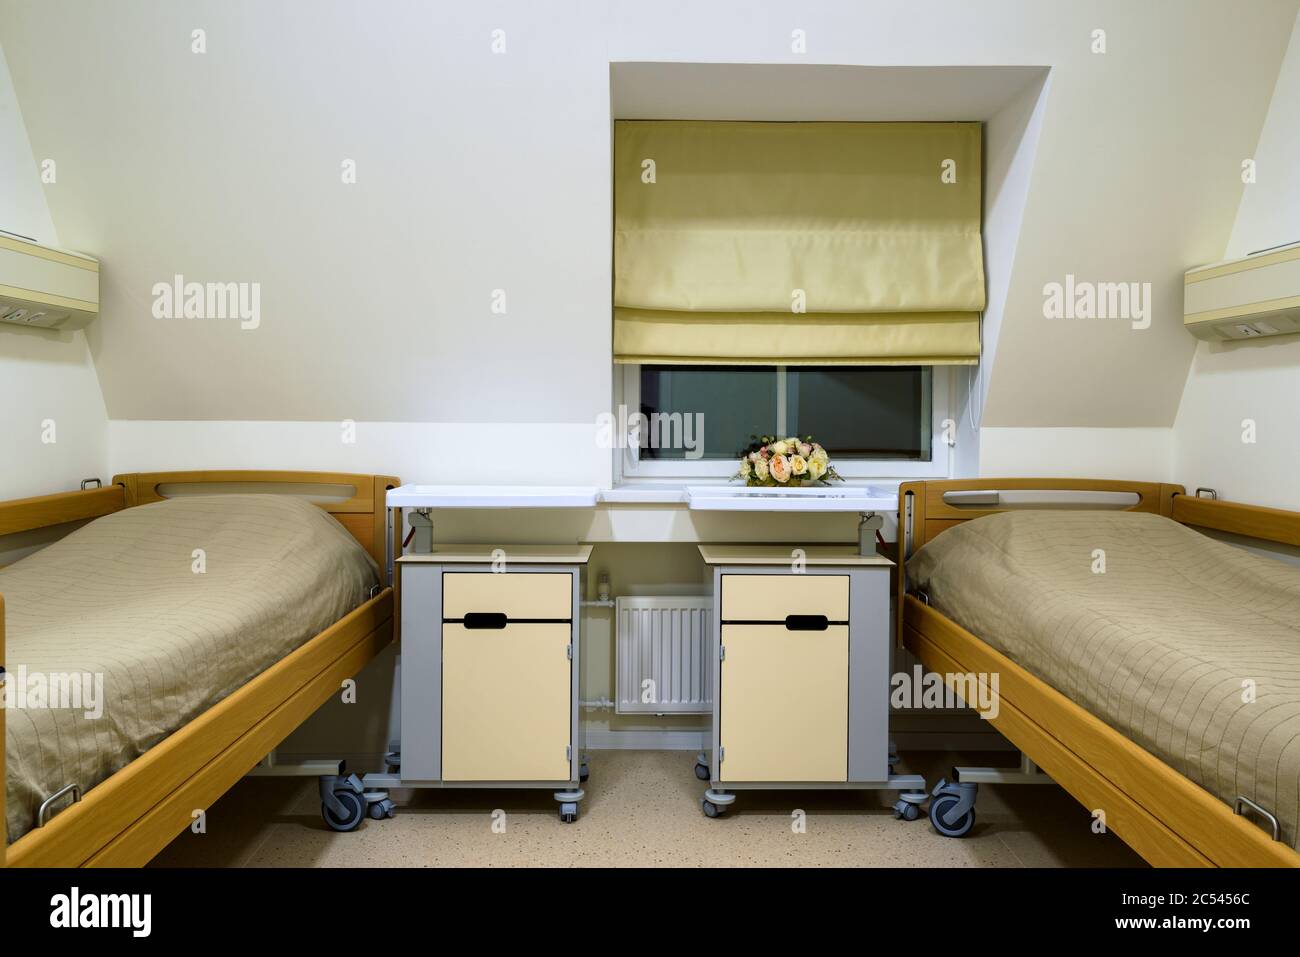 MOSKAU - 14. DEZEMBER 2016: Inneneinrichtung des Krankenhauszimmers in der Klinik. Stockfoto